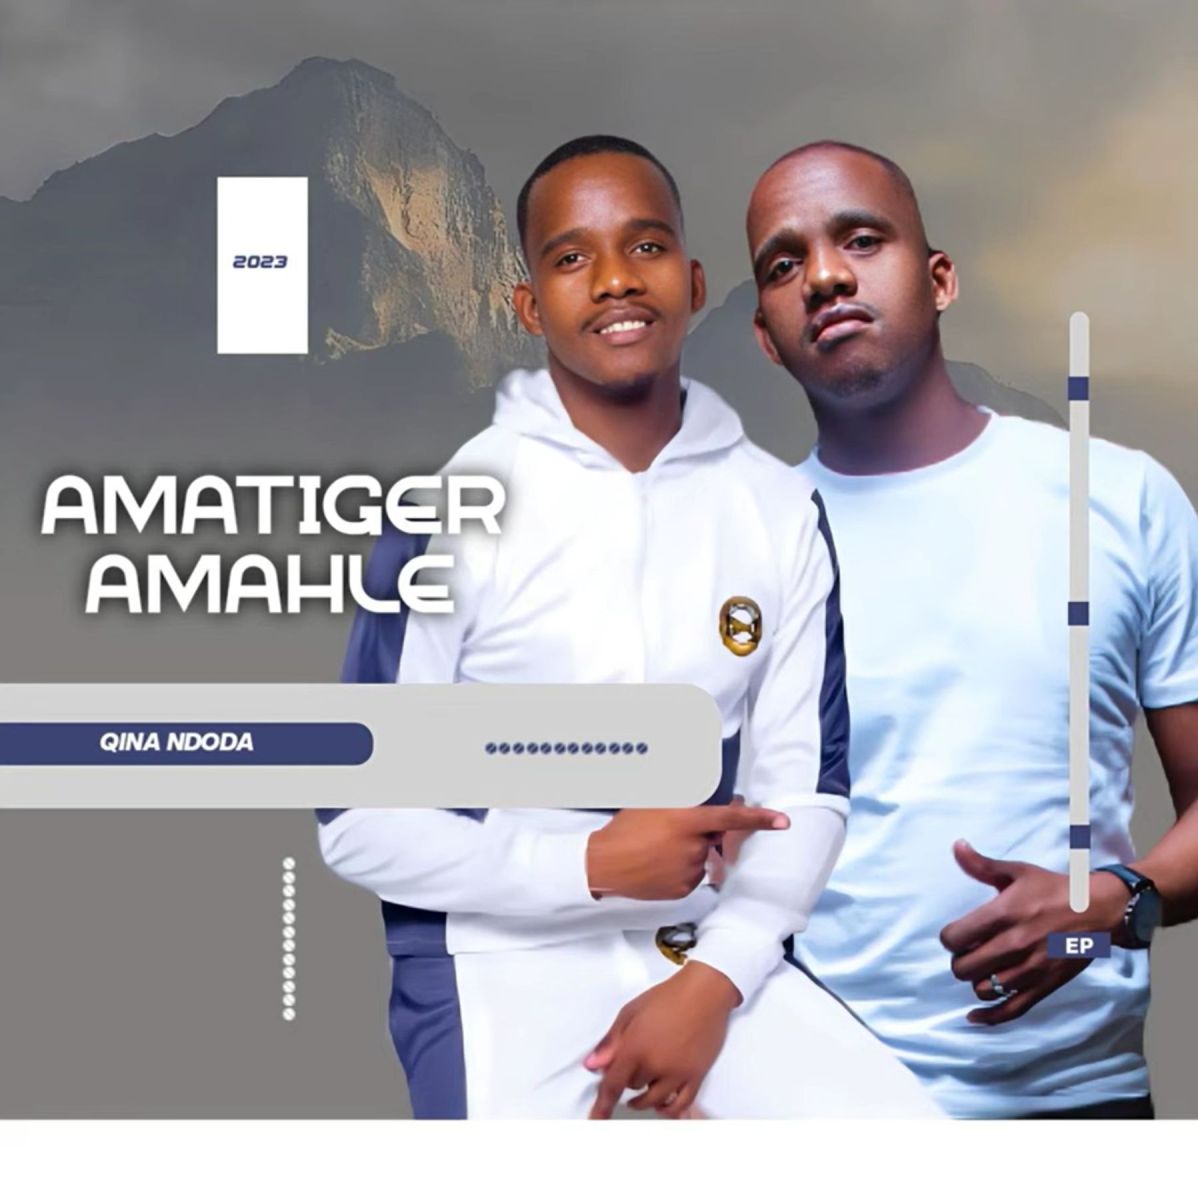 Amatiger Amahle - Qina Ndoda 1